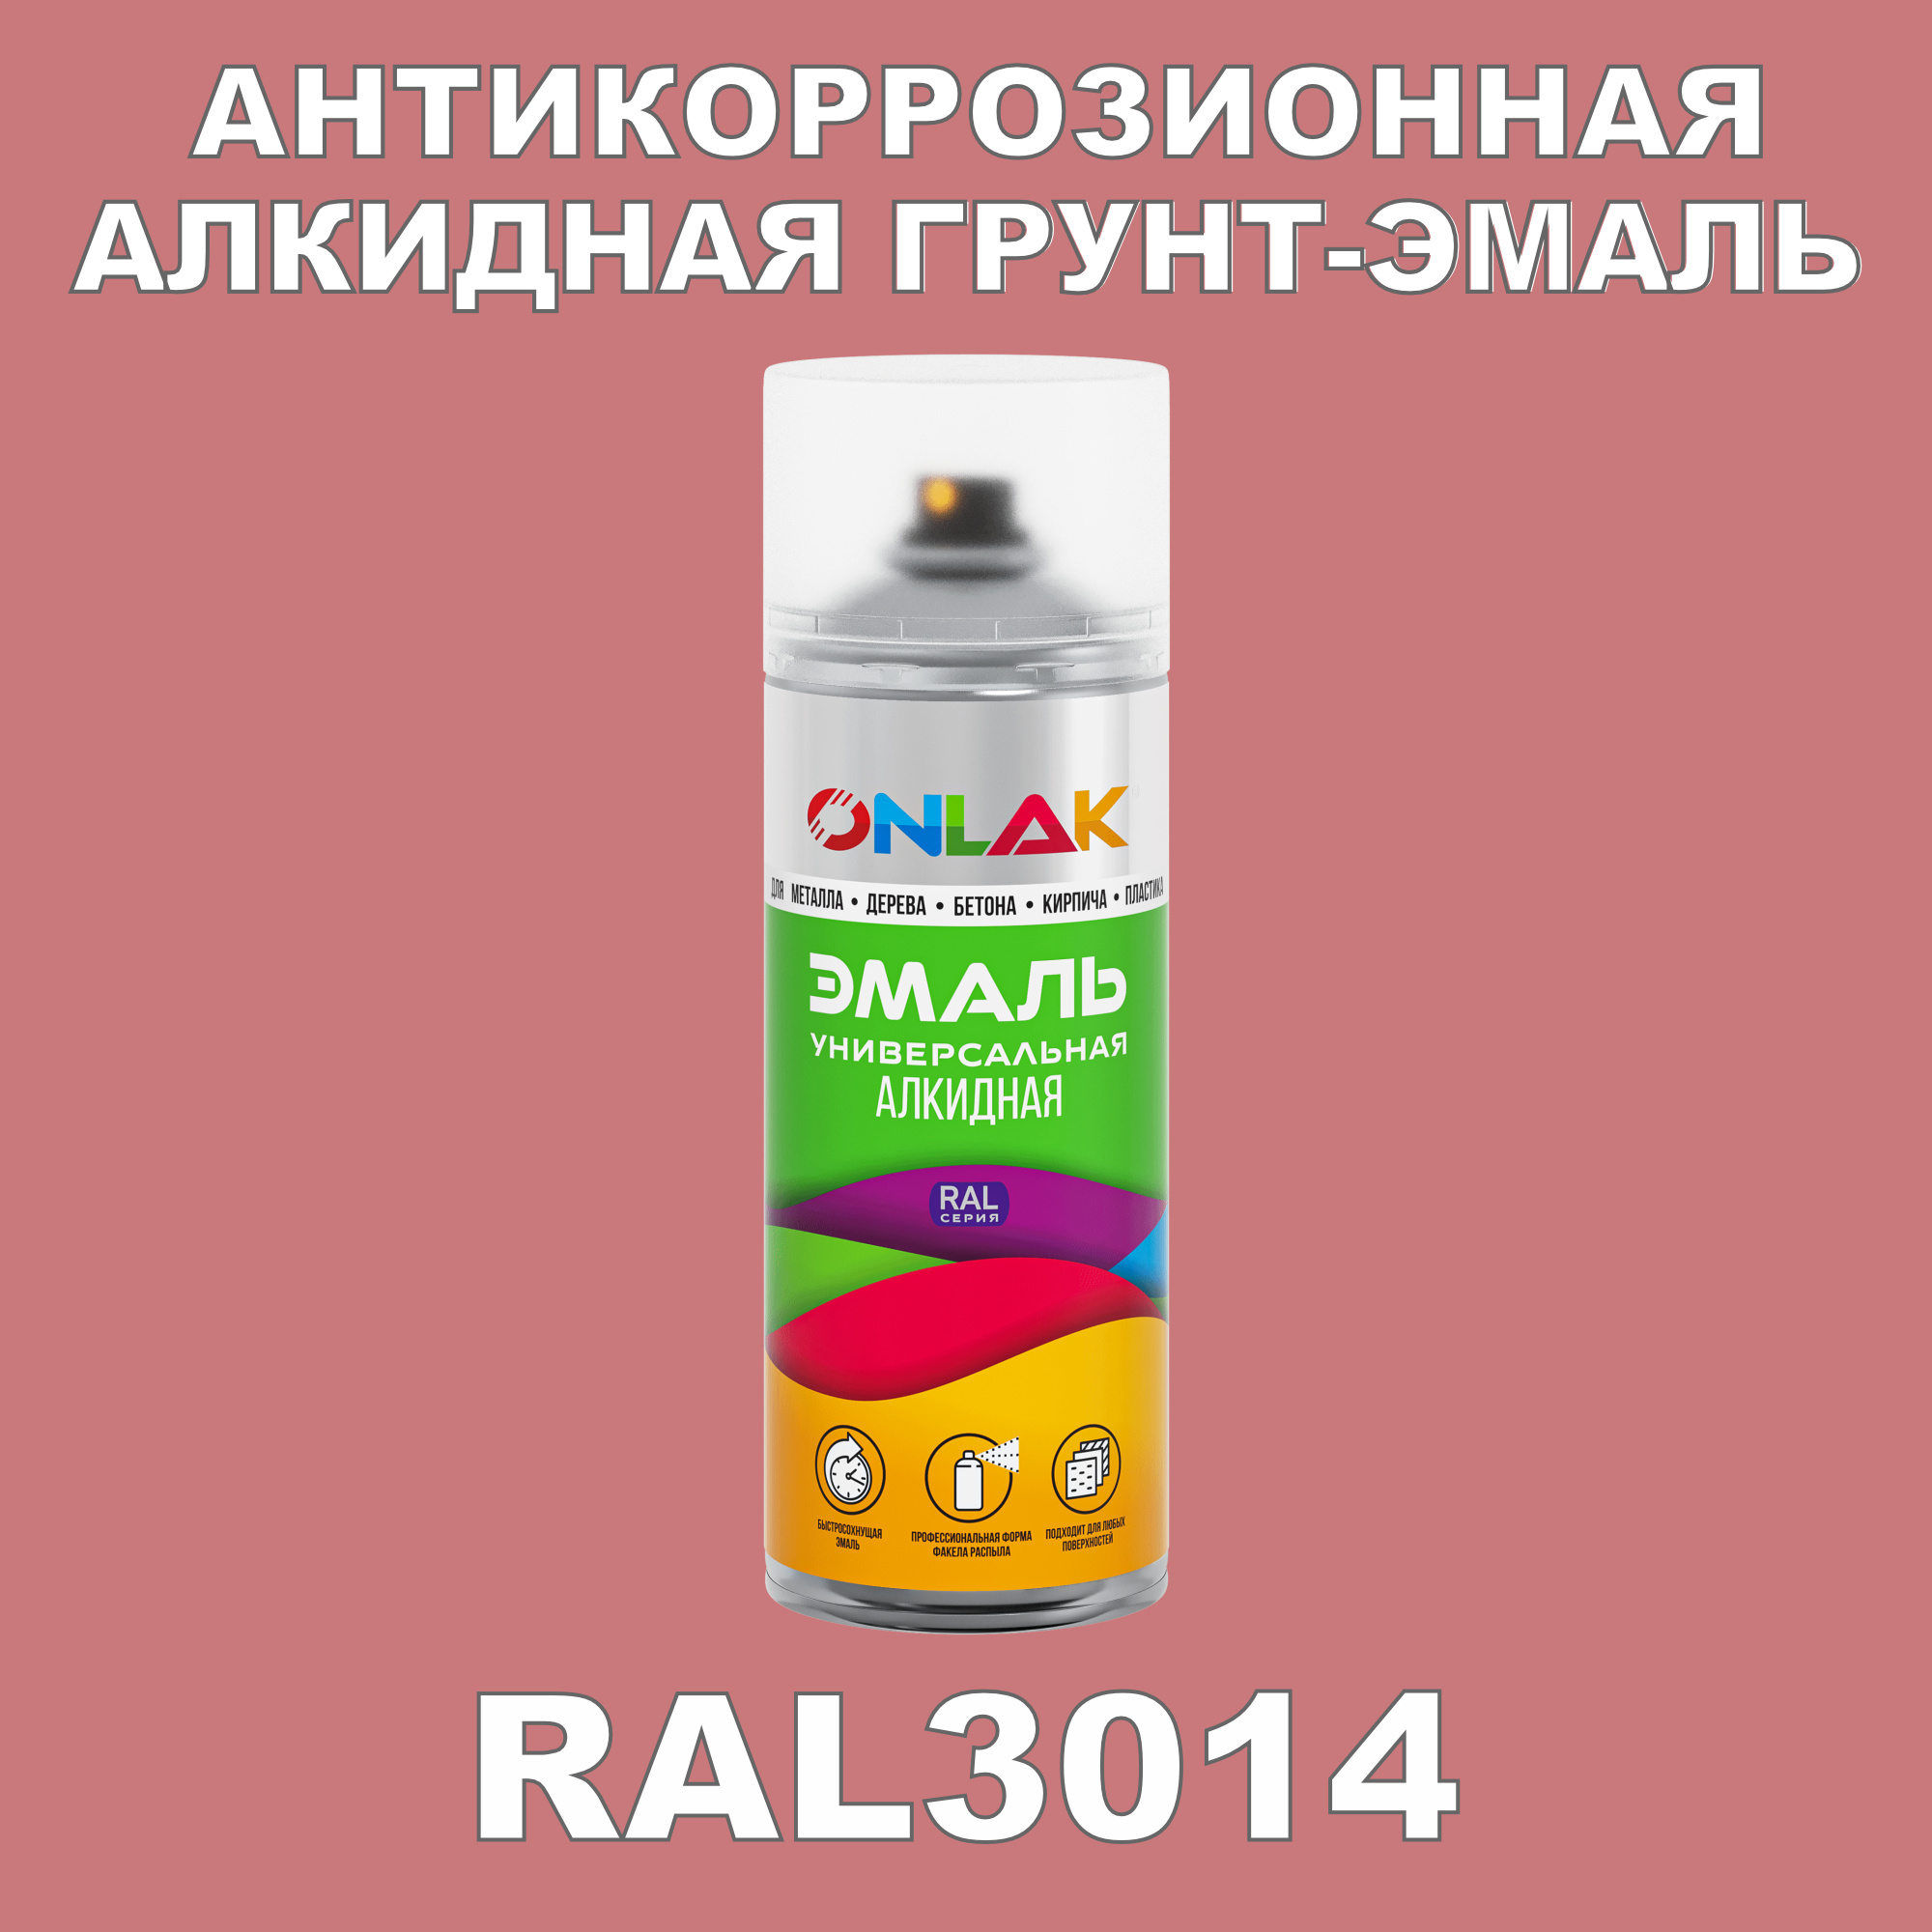 Антикоррозионная грунт-эмаль ONLAK RAL3014 матовая для металла и защиты от ржавчины